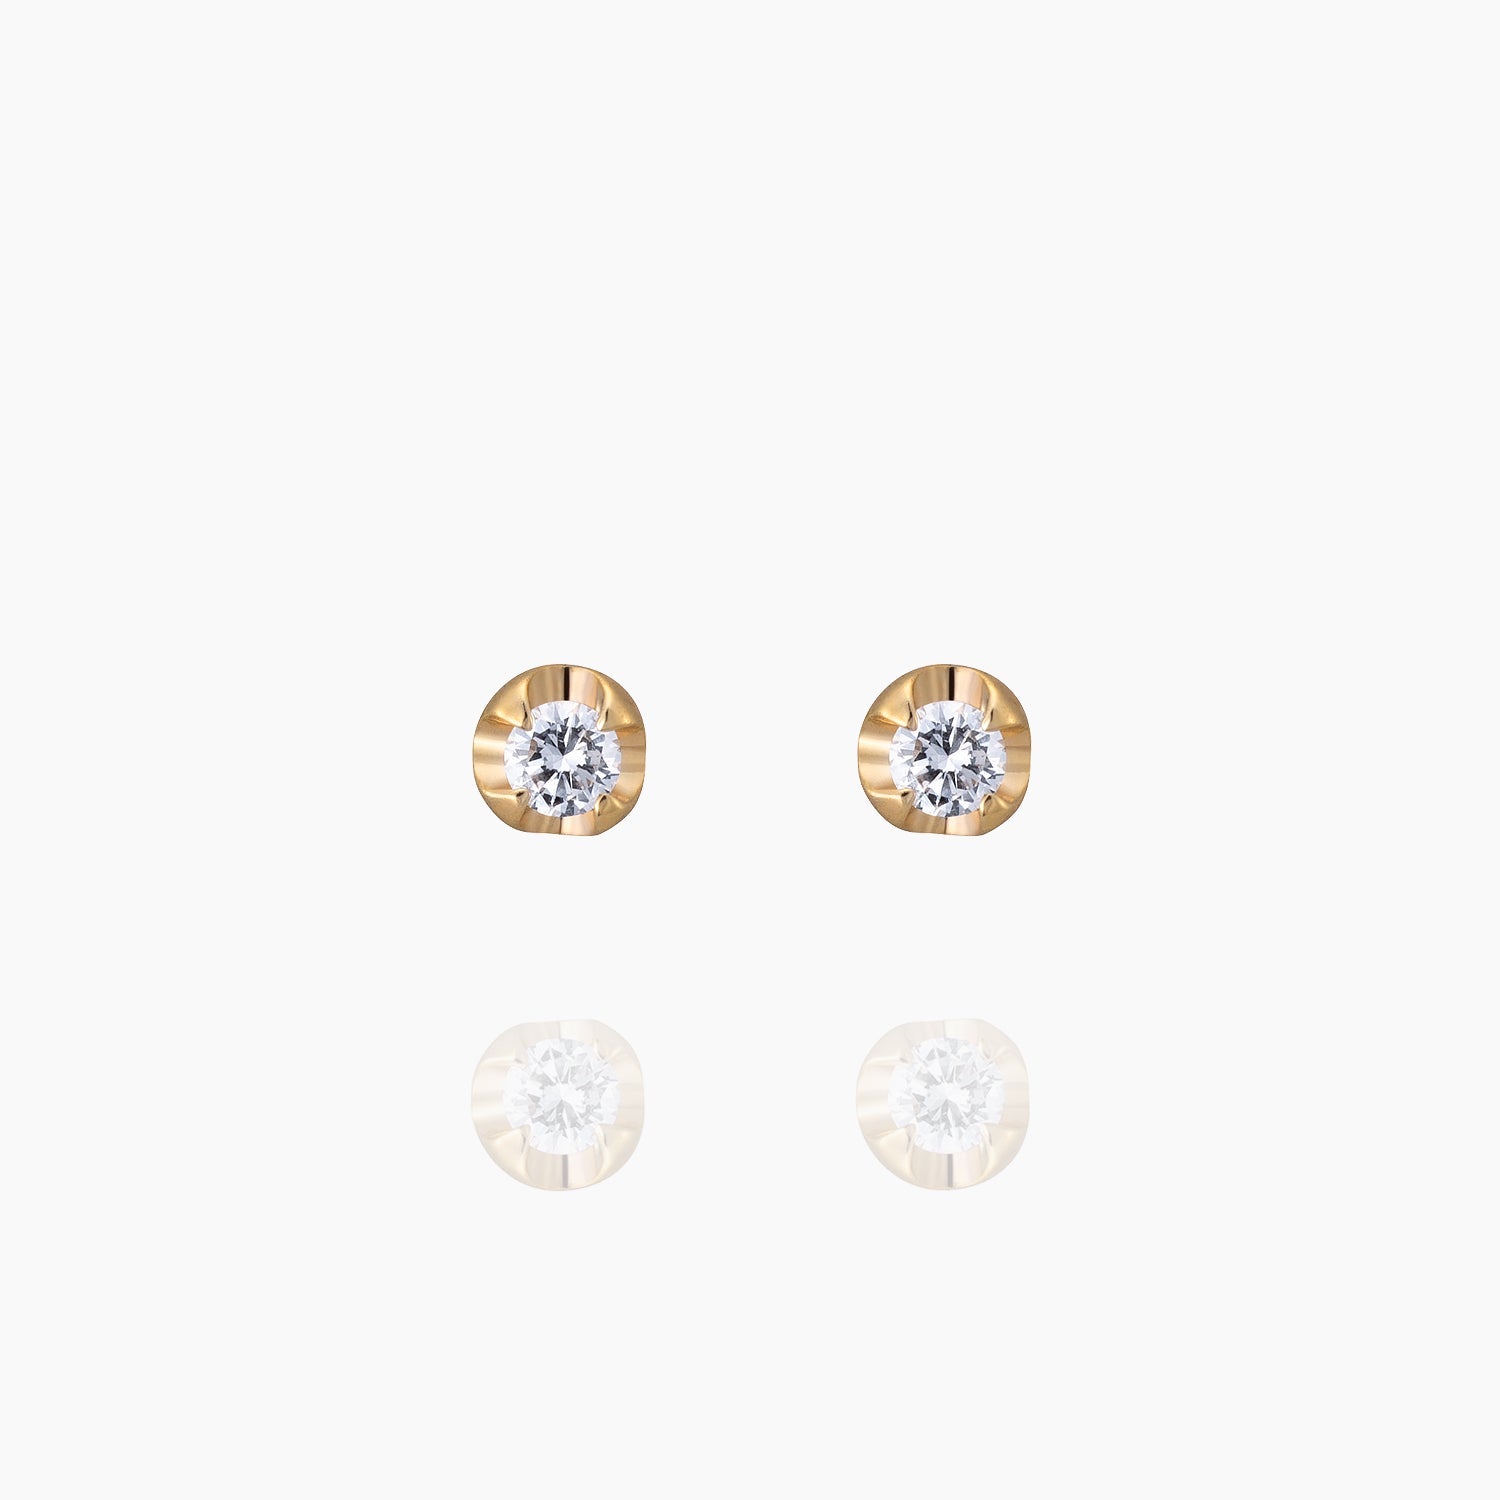 Silas サイラス ピアス 宝石は天然ダイヤモンド 計0.04ct 素材はK10のピンクゴールド 商品番号MA36 正面